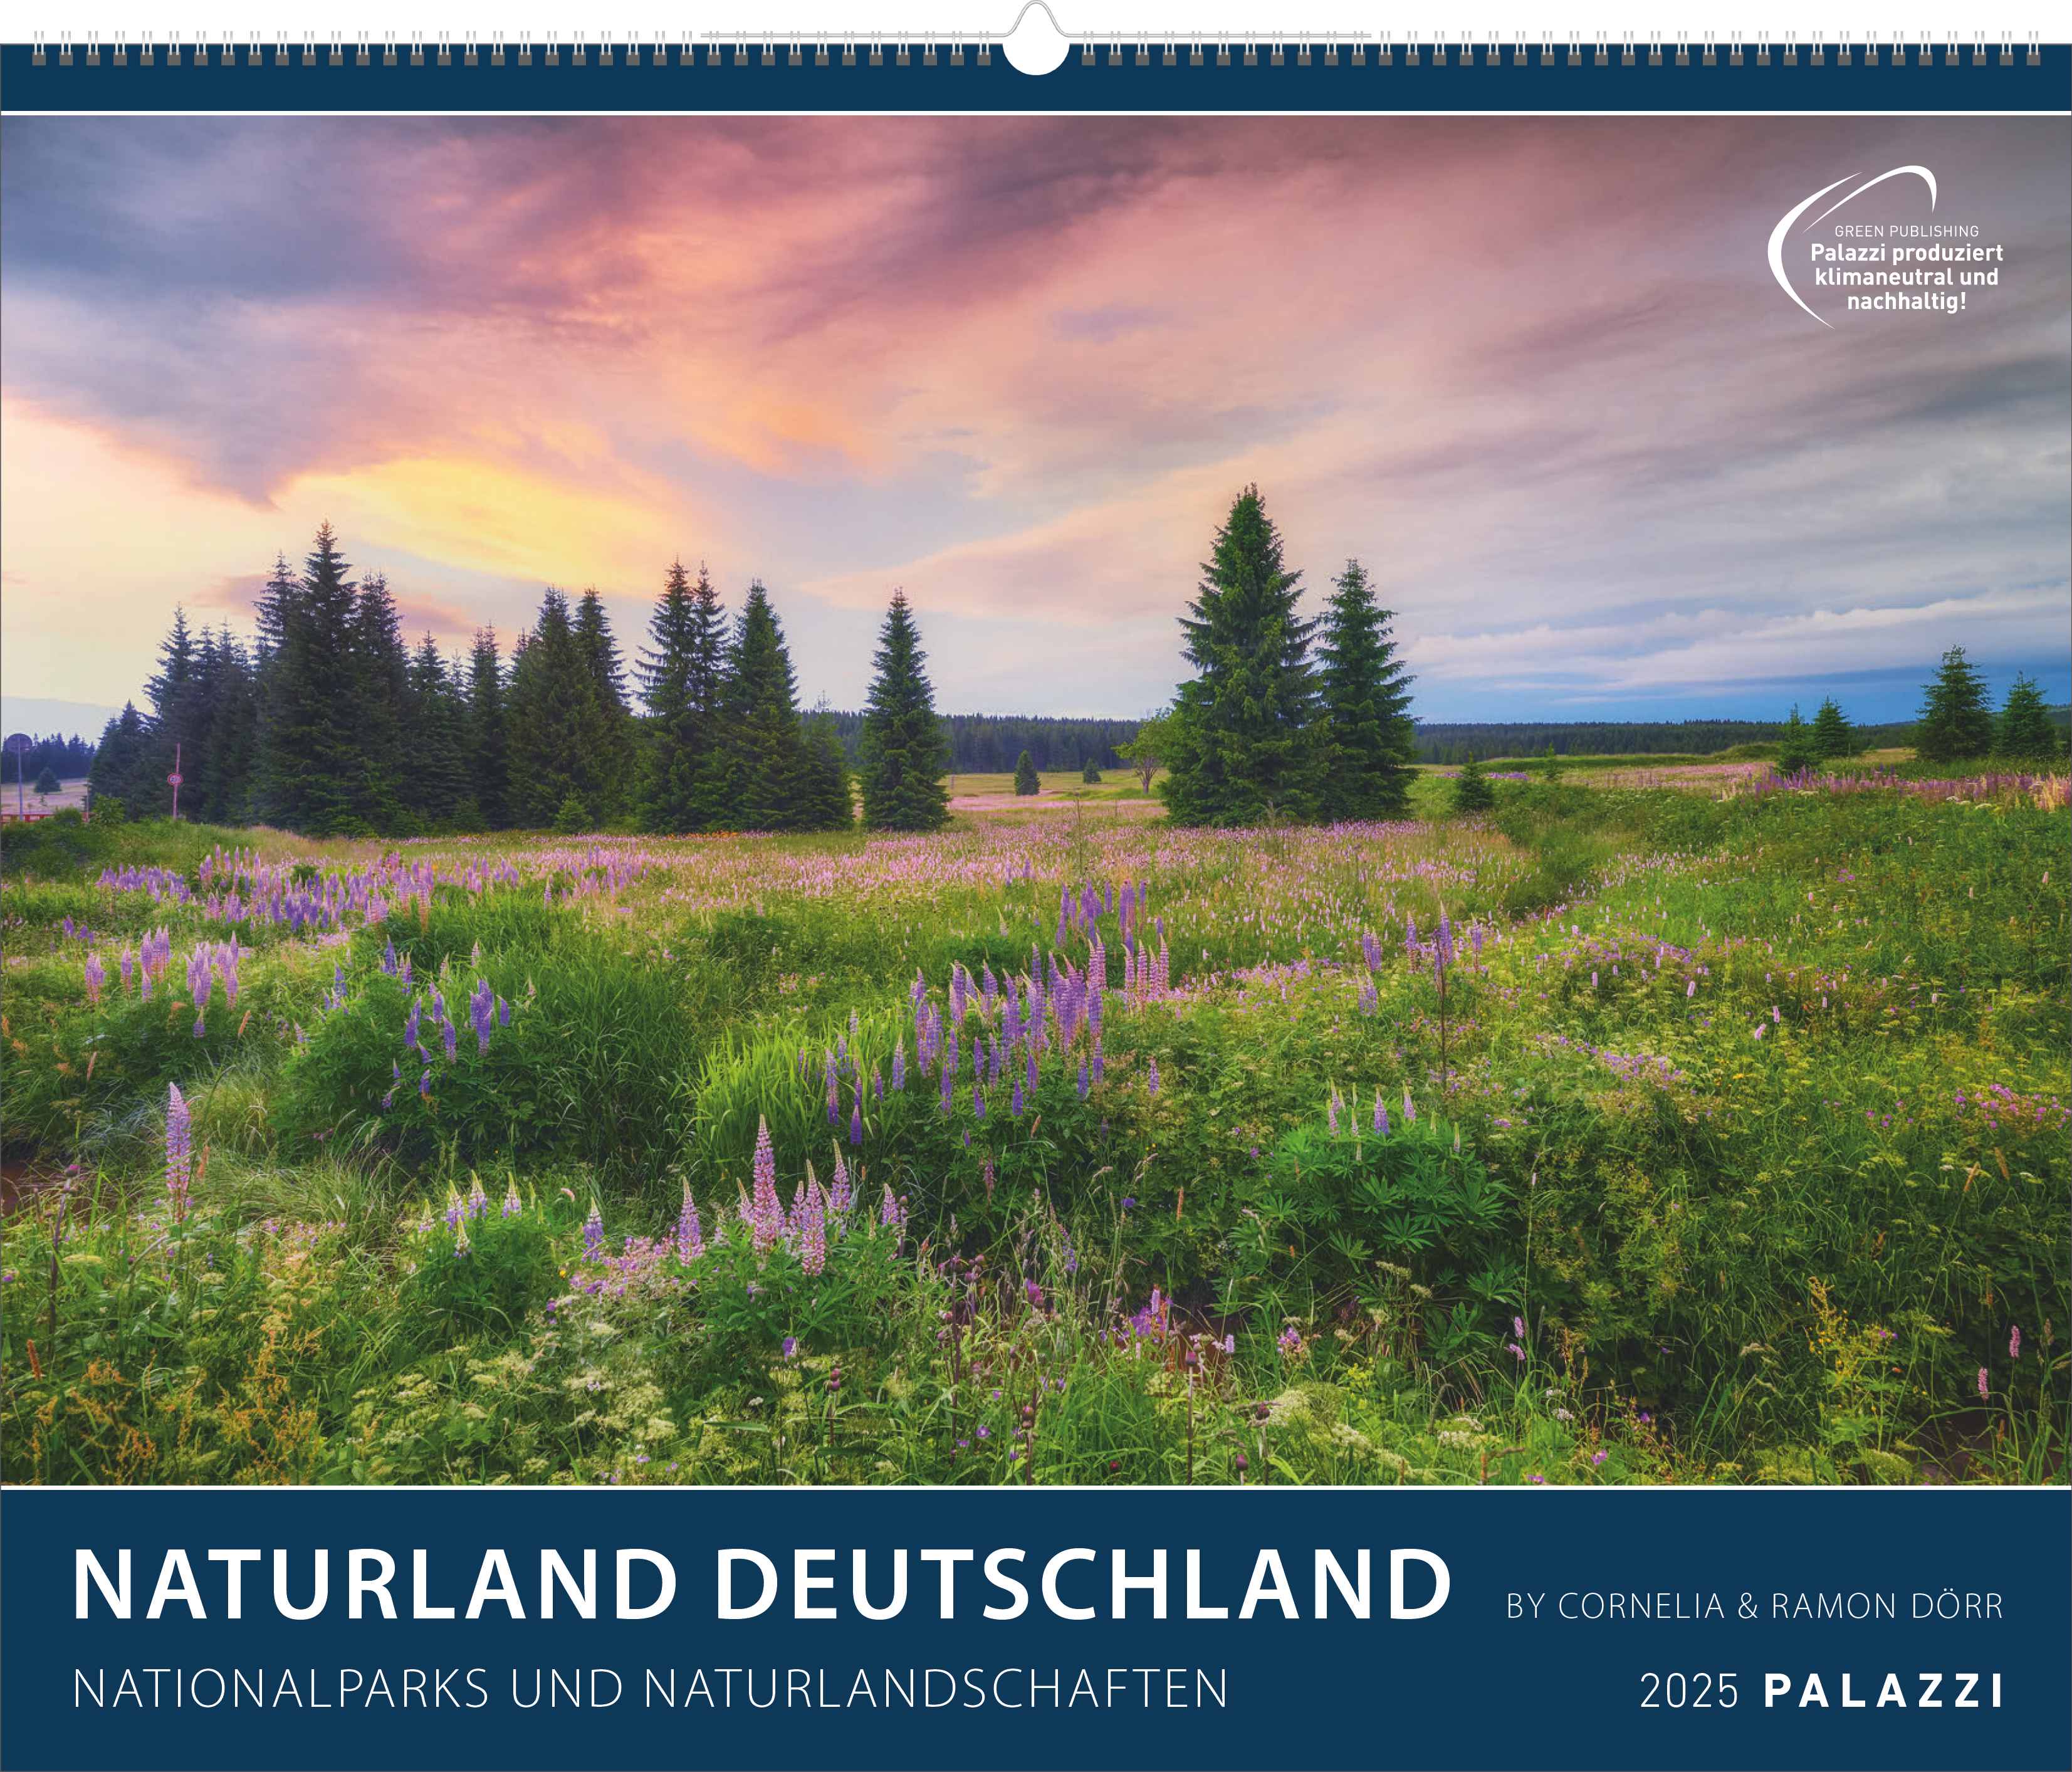 Naturland Deutschland |
NATIONALPARKS UND NATURLANDSCHAFTEN